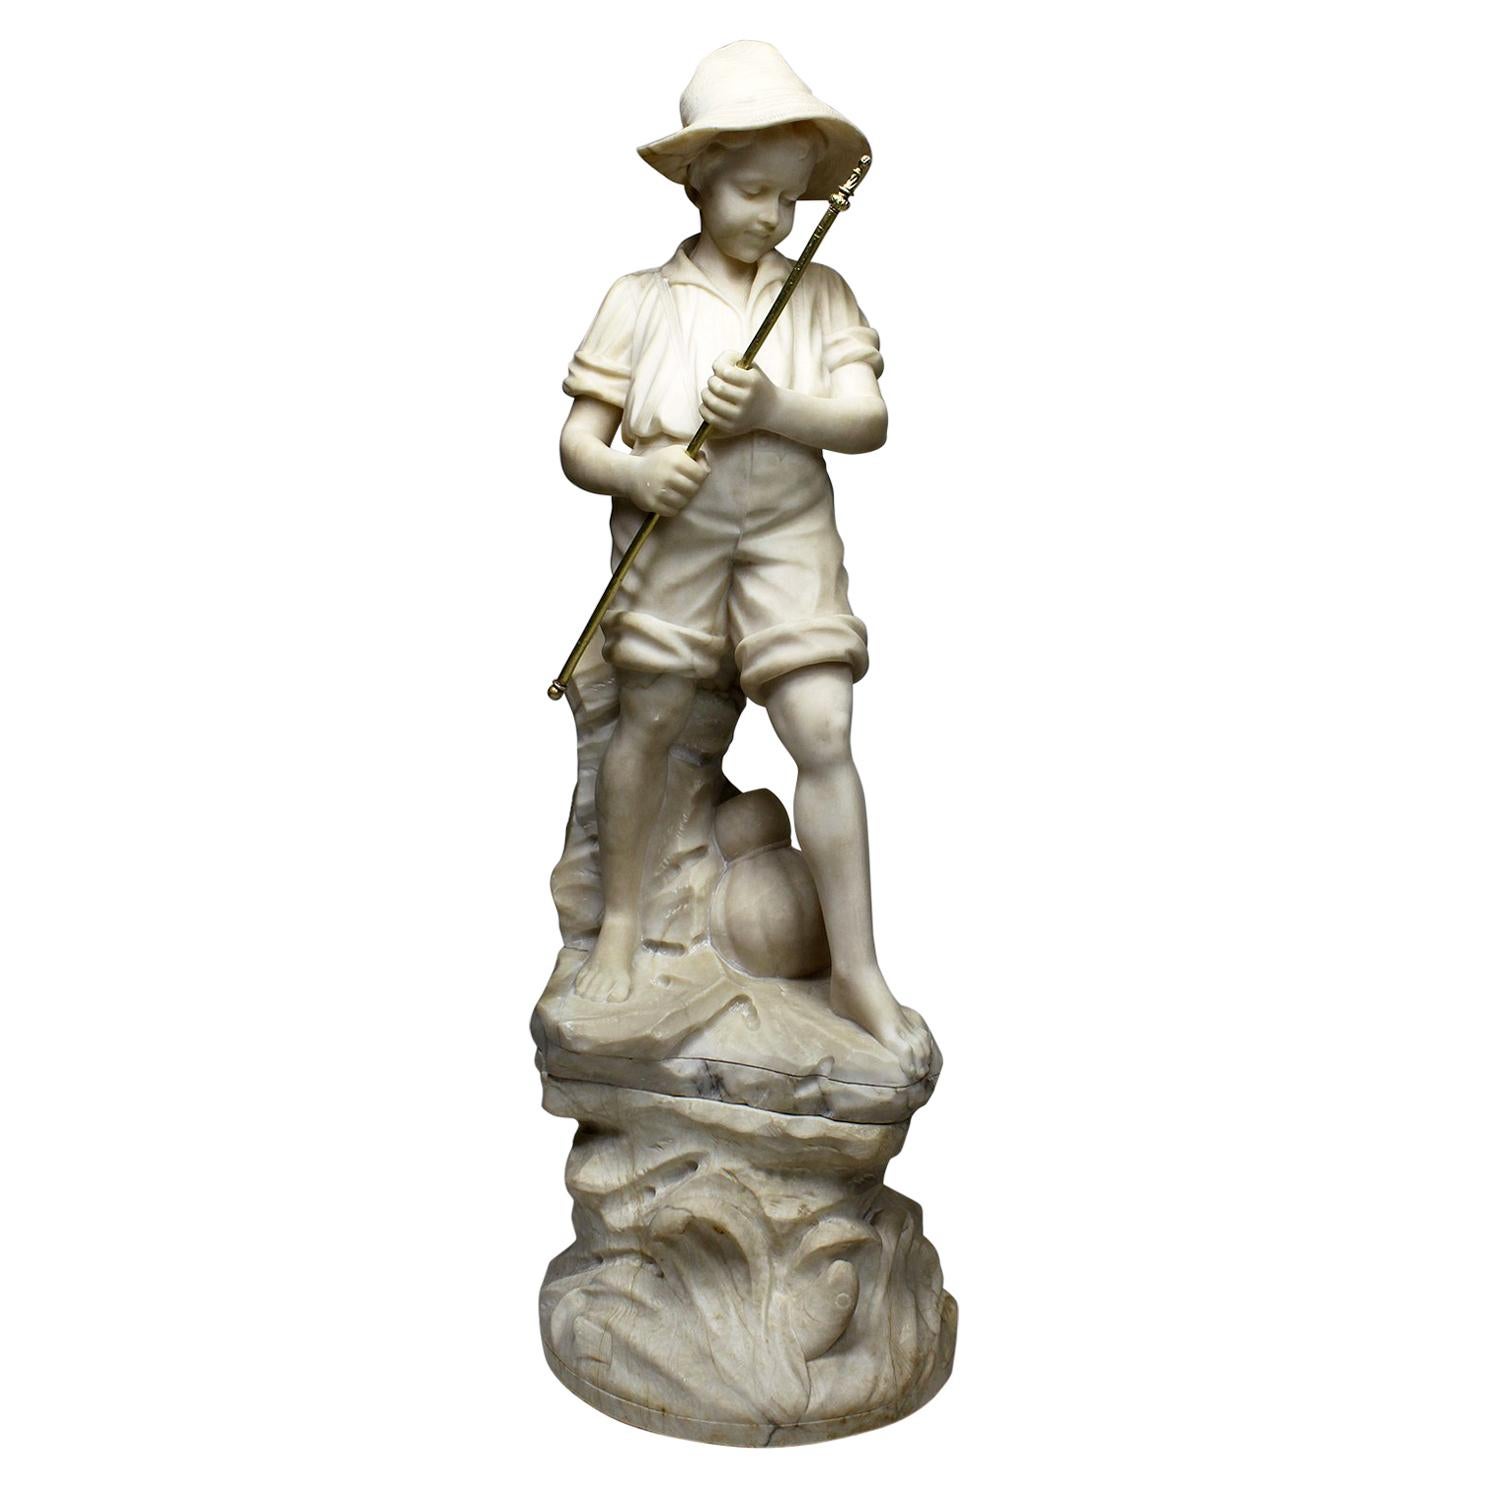 Charmante figure italienne en albâtre sculpté du 19ème-20ème siècle représentant un garçon pêcheur